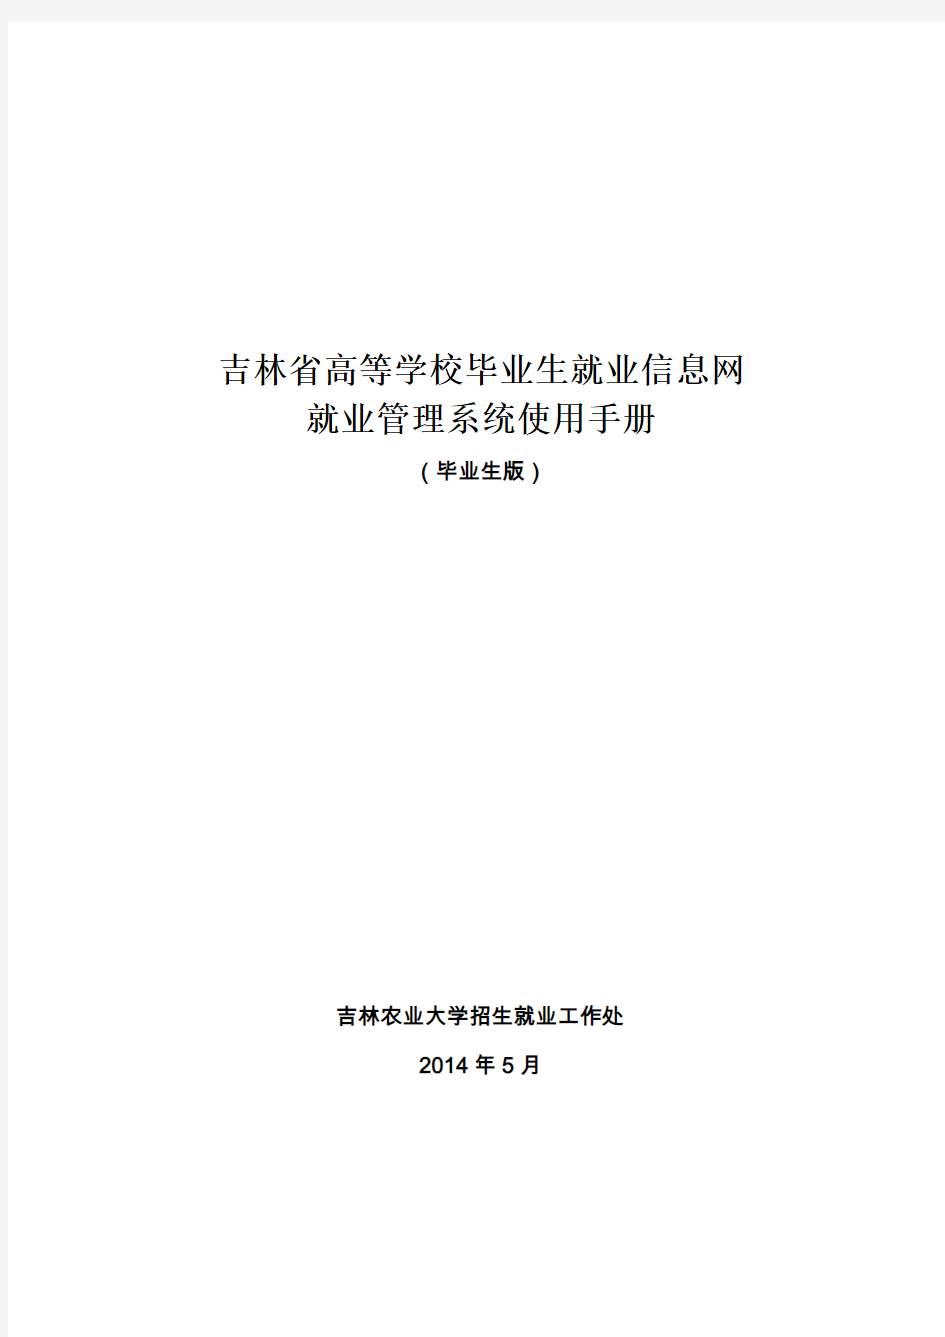 吉林省高等学校毕业生就业信息网就业管理系统使用手册(毕业生版)